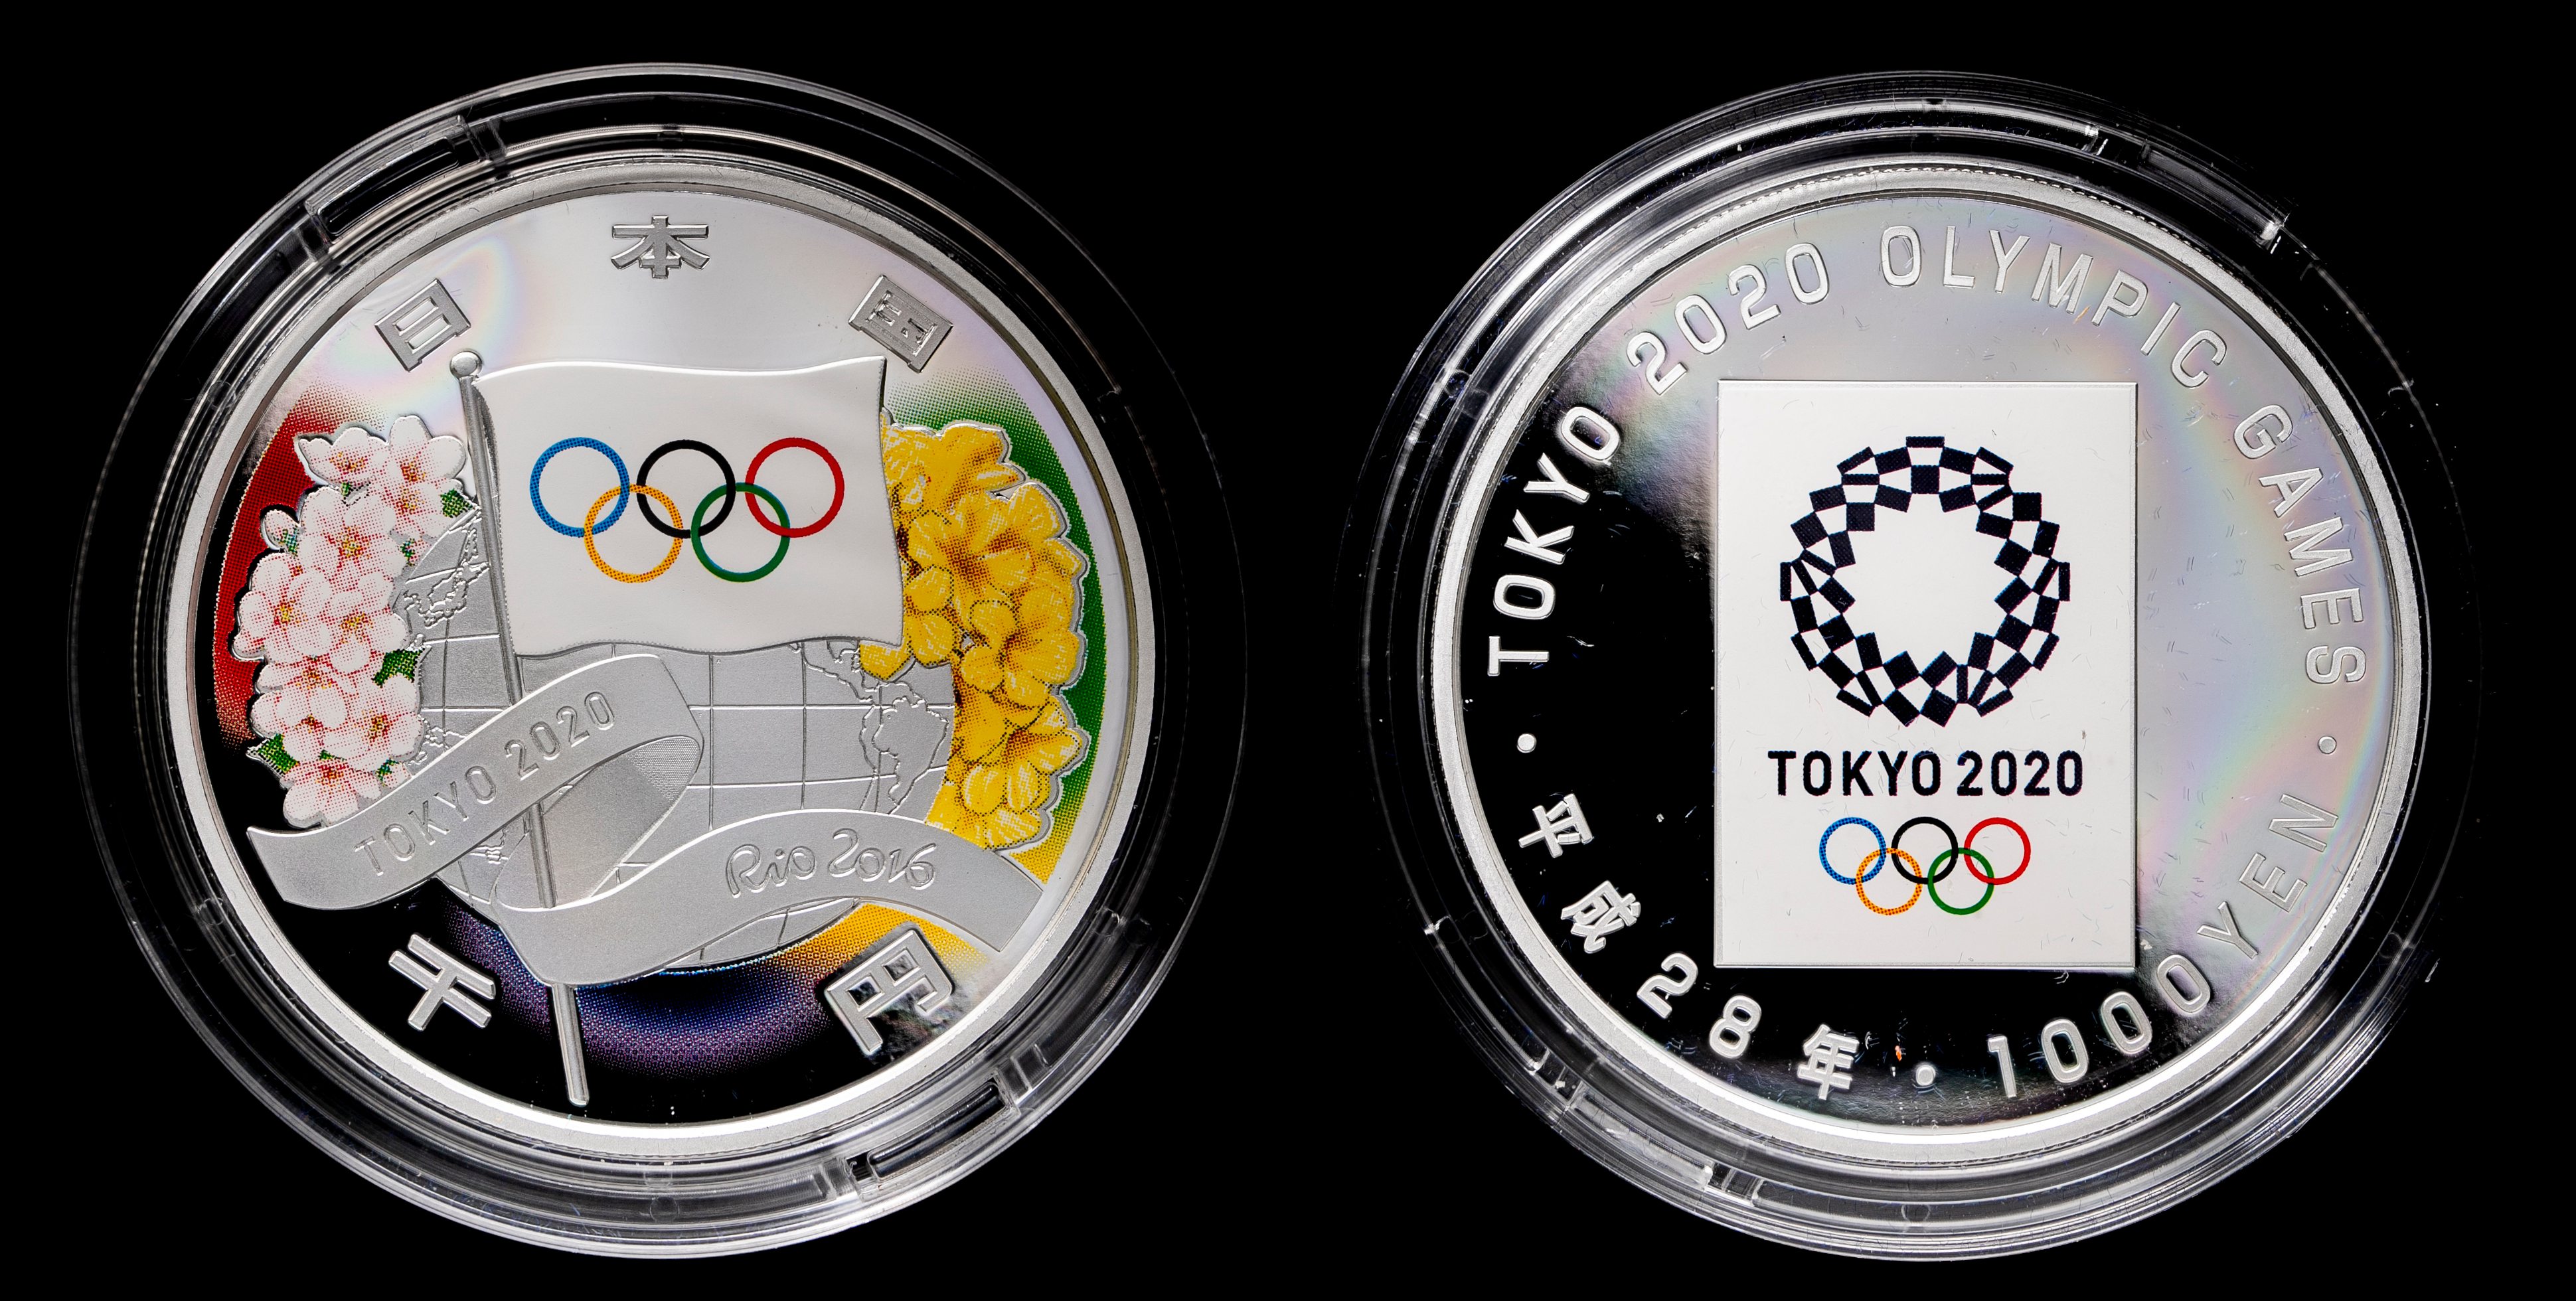 钱币博物馆| 2020年東京オリンピック記念千円記念銀貨2020Tokyo